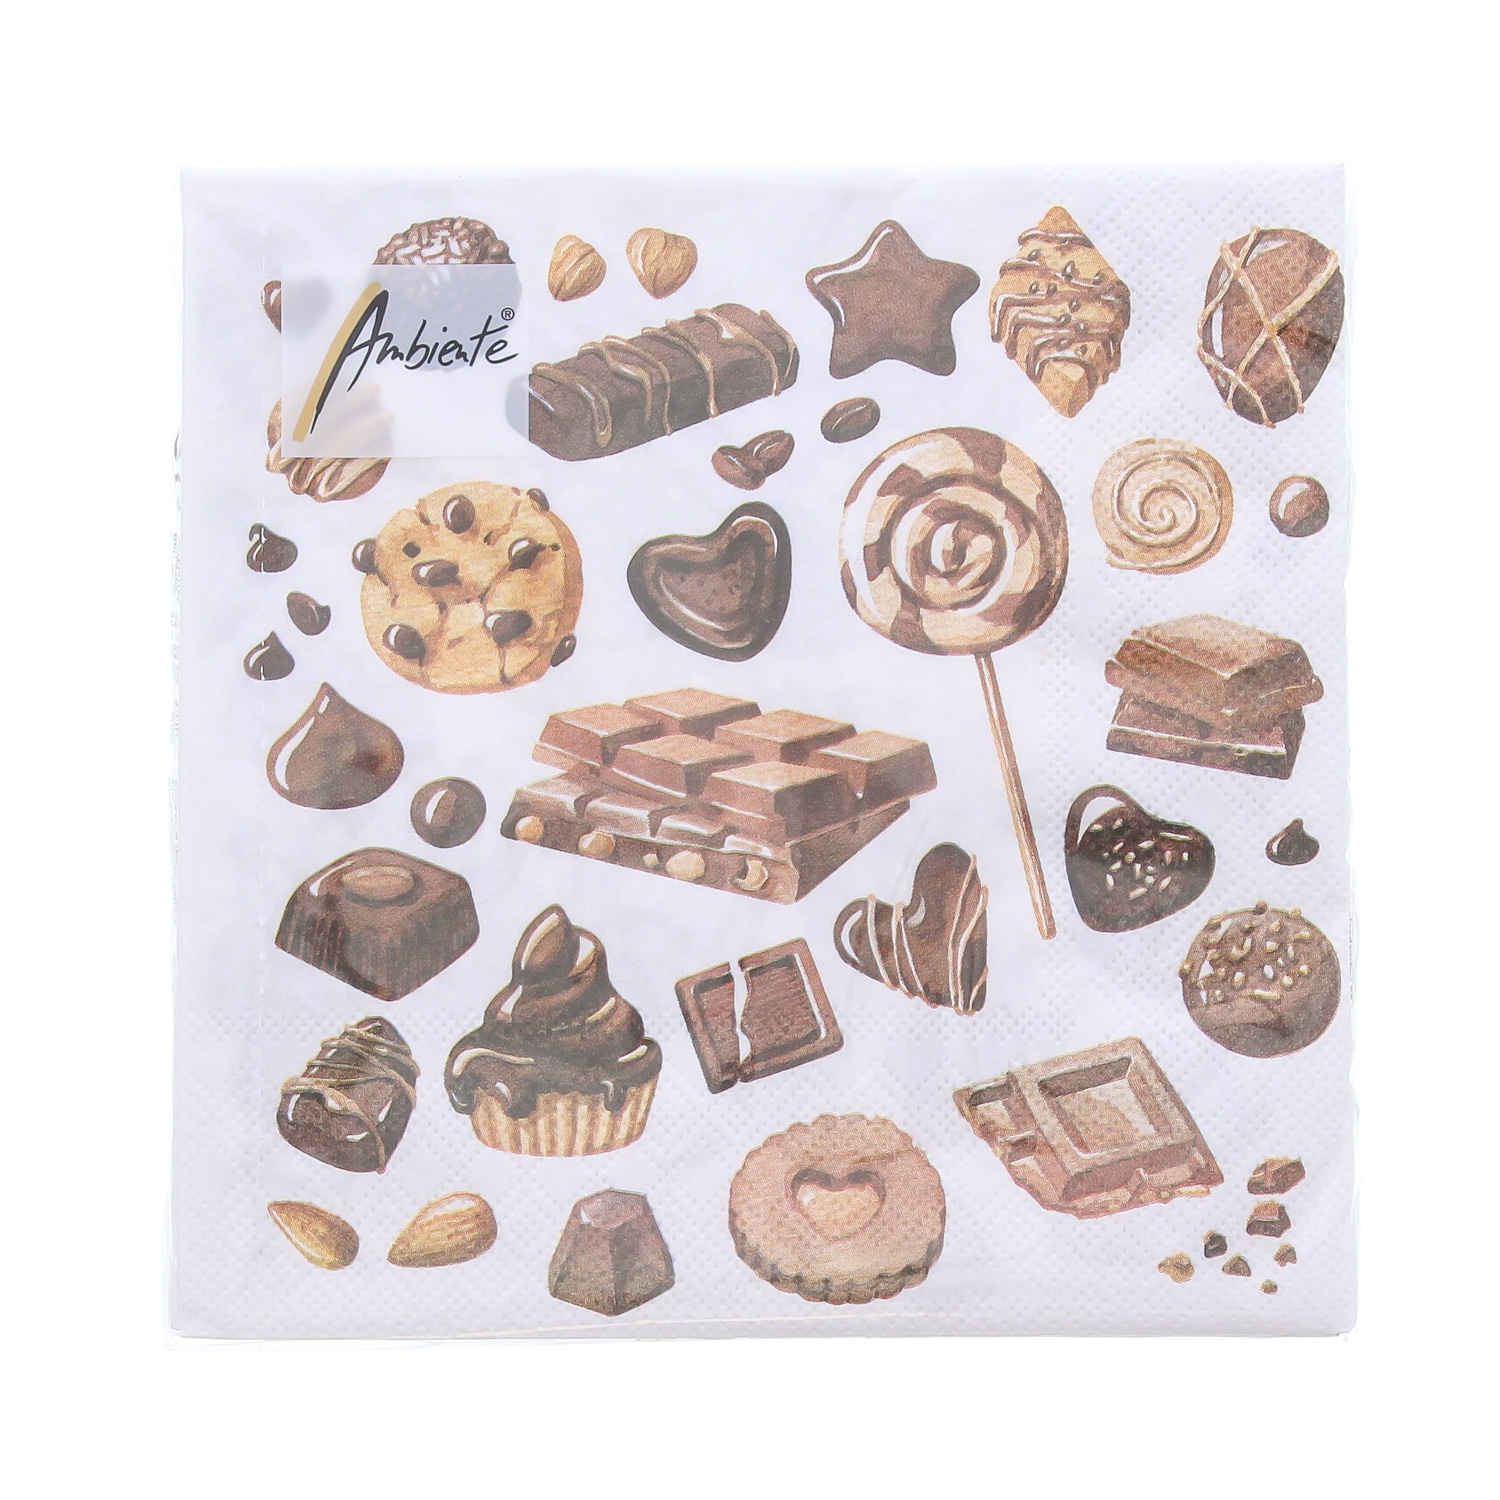 Serviette Sweet chocolates 33 cm x 33 cm – 165*165*25 mm – 1 Packung mit 20 Servietten